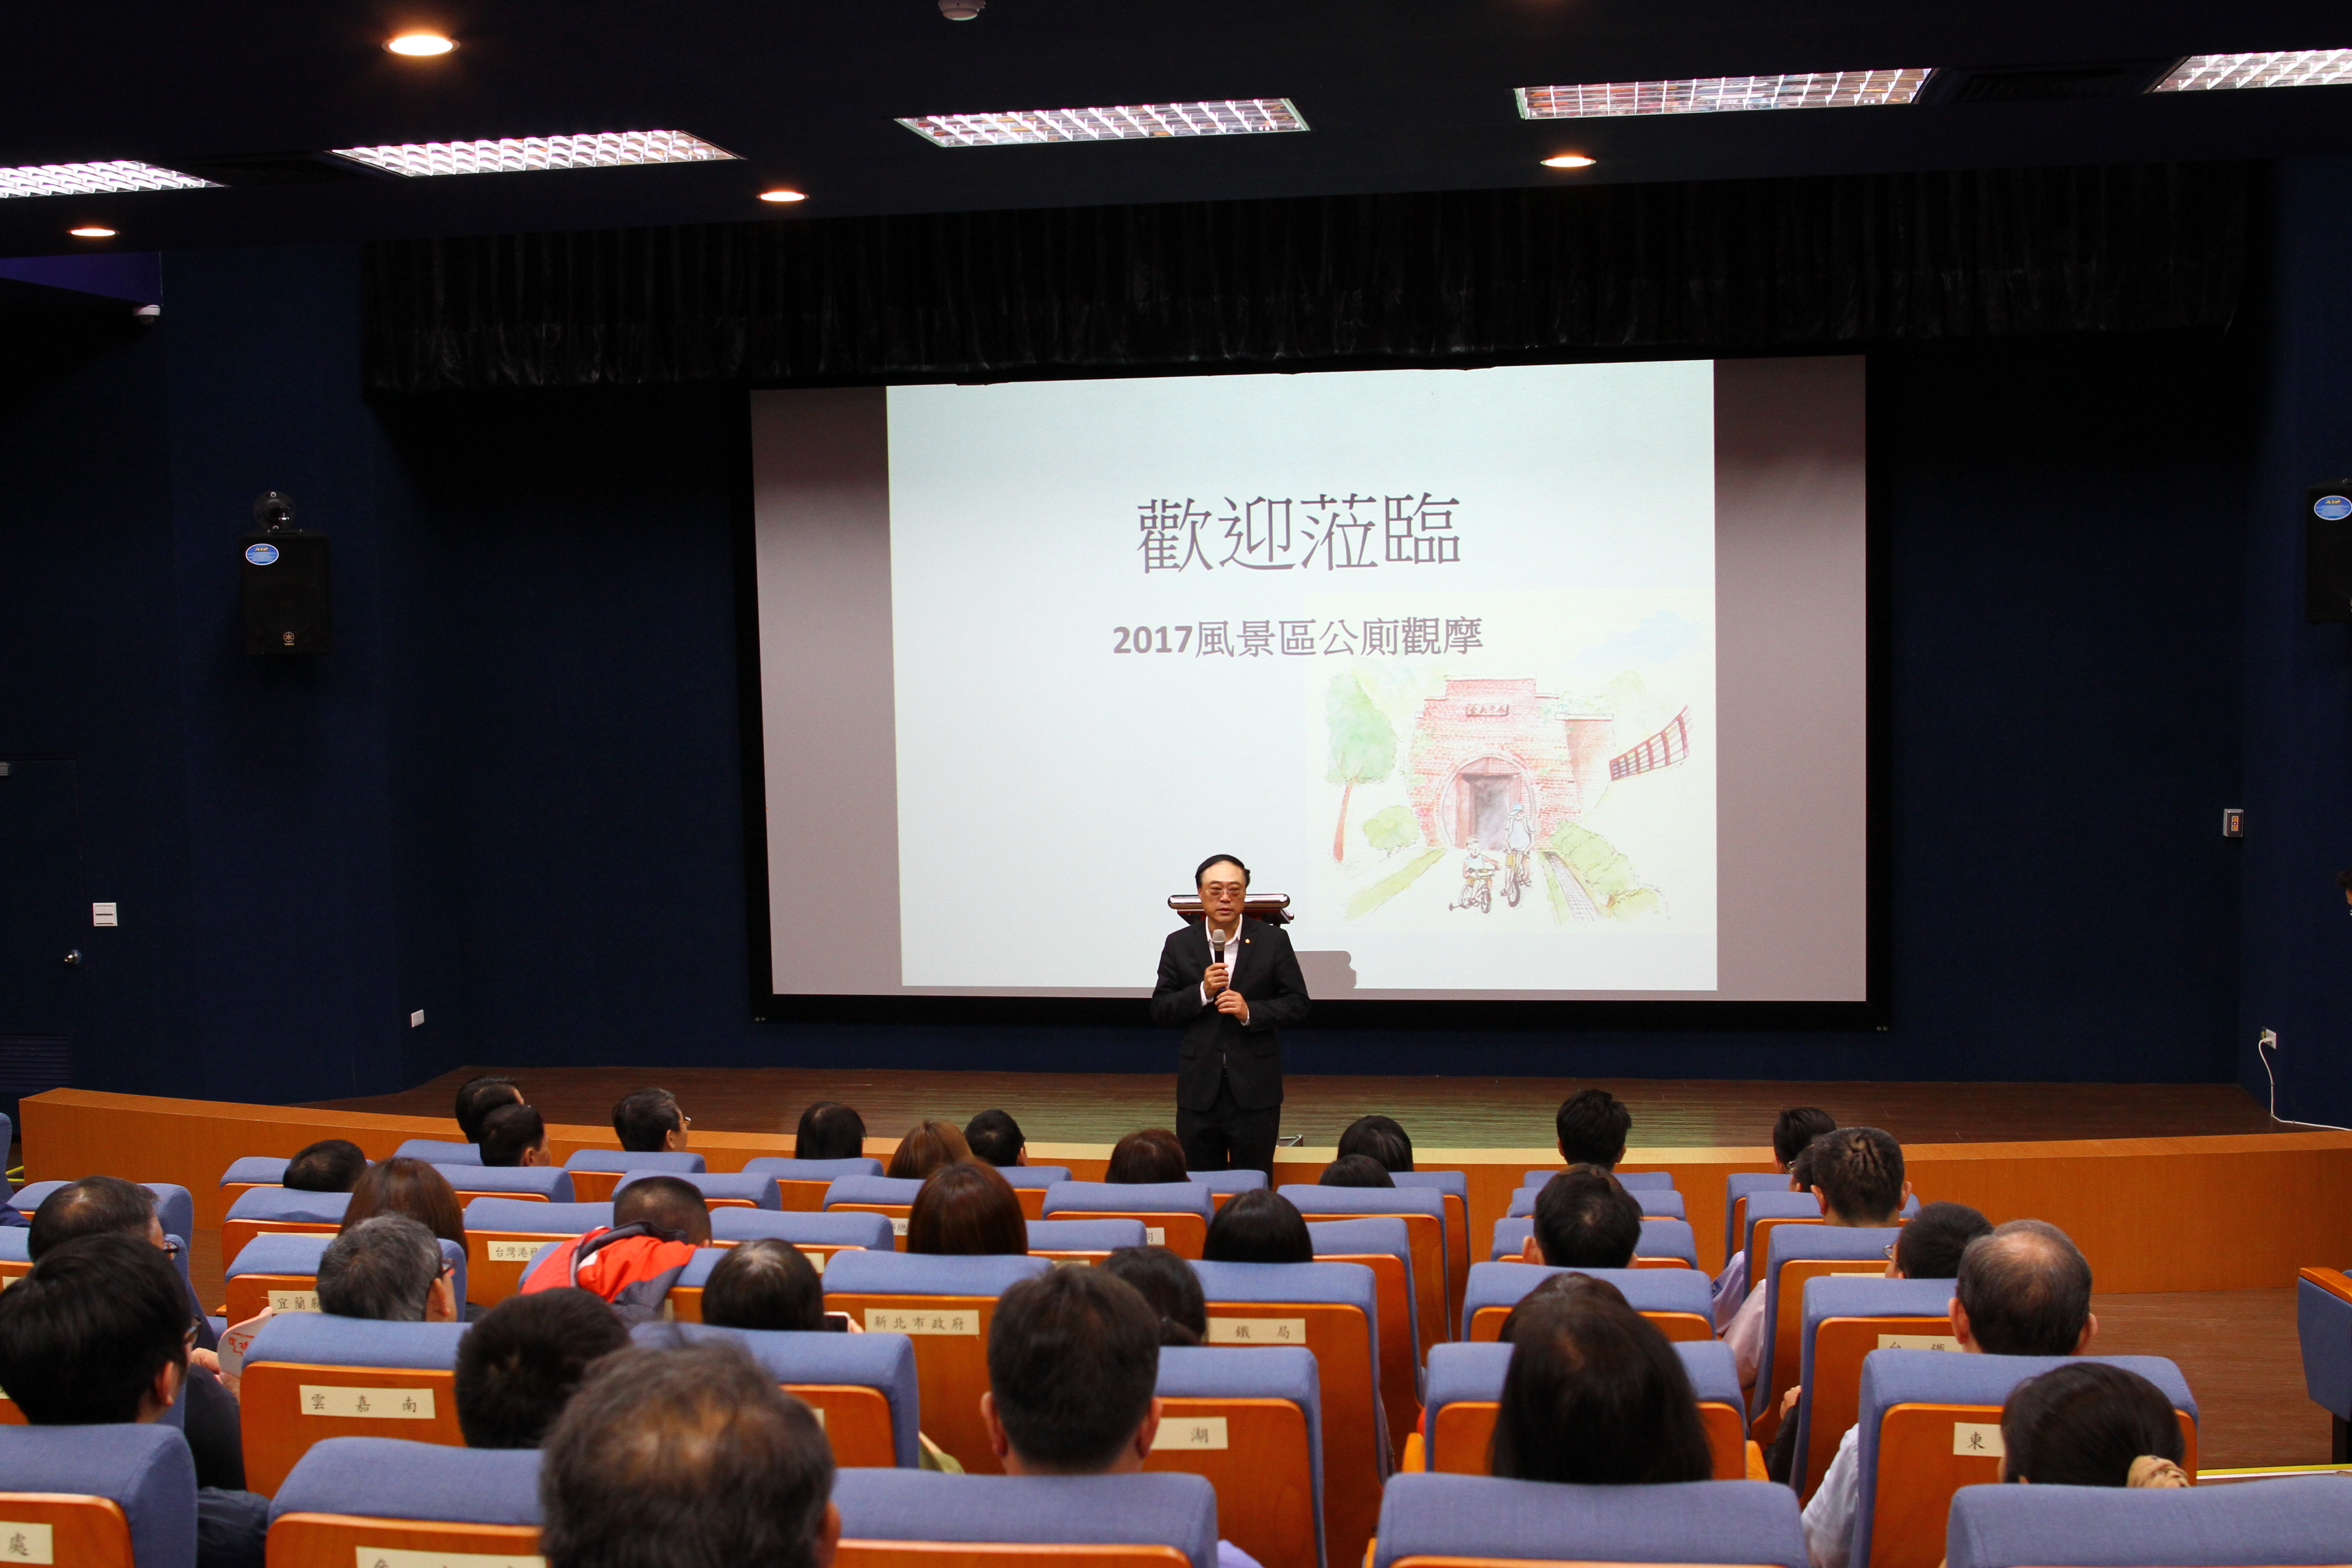 観光局長の周永輝氏は、6Sコンセプトで公衆トイレを管理するよう管理事務所に奨励しました。